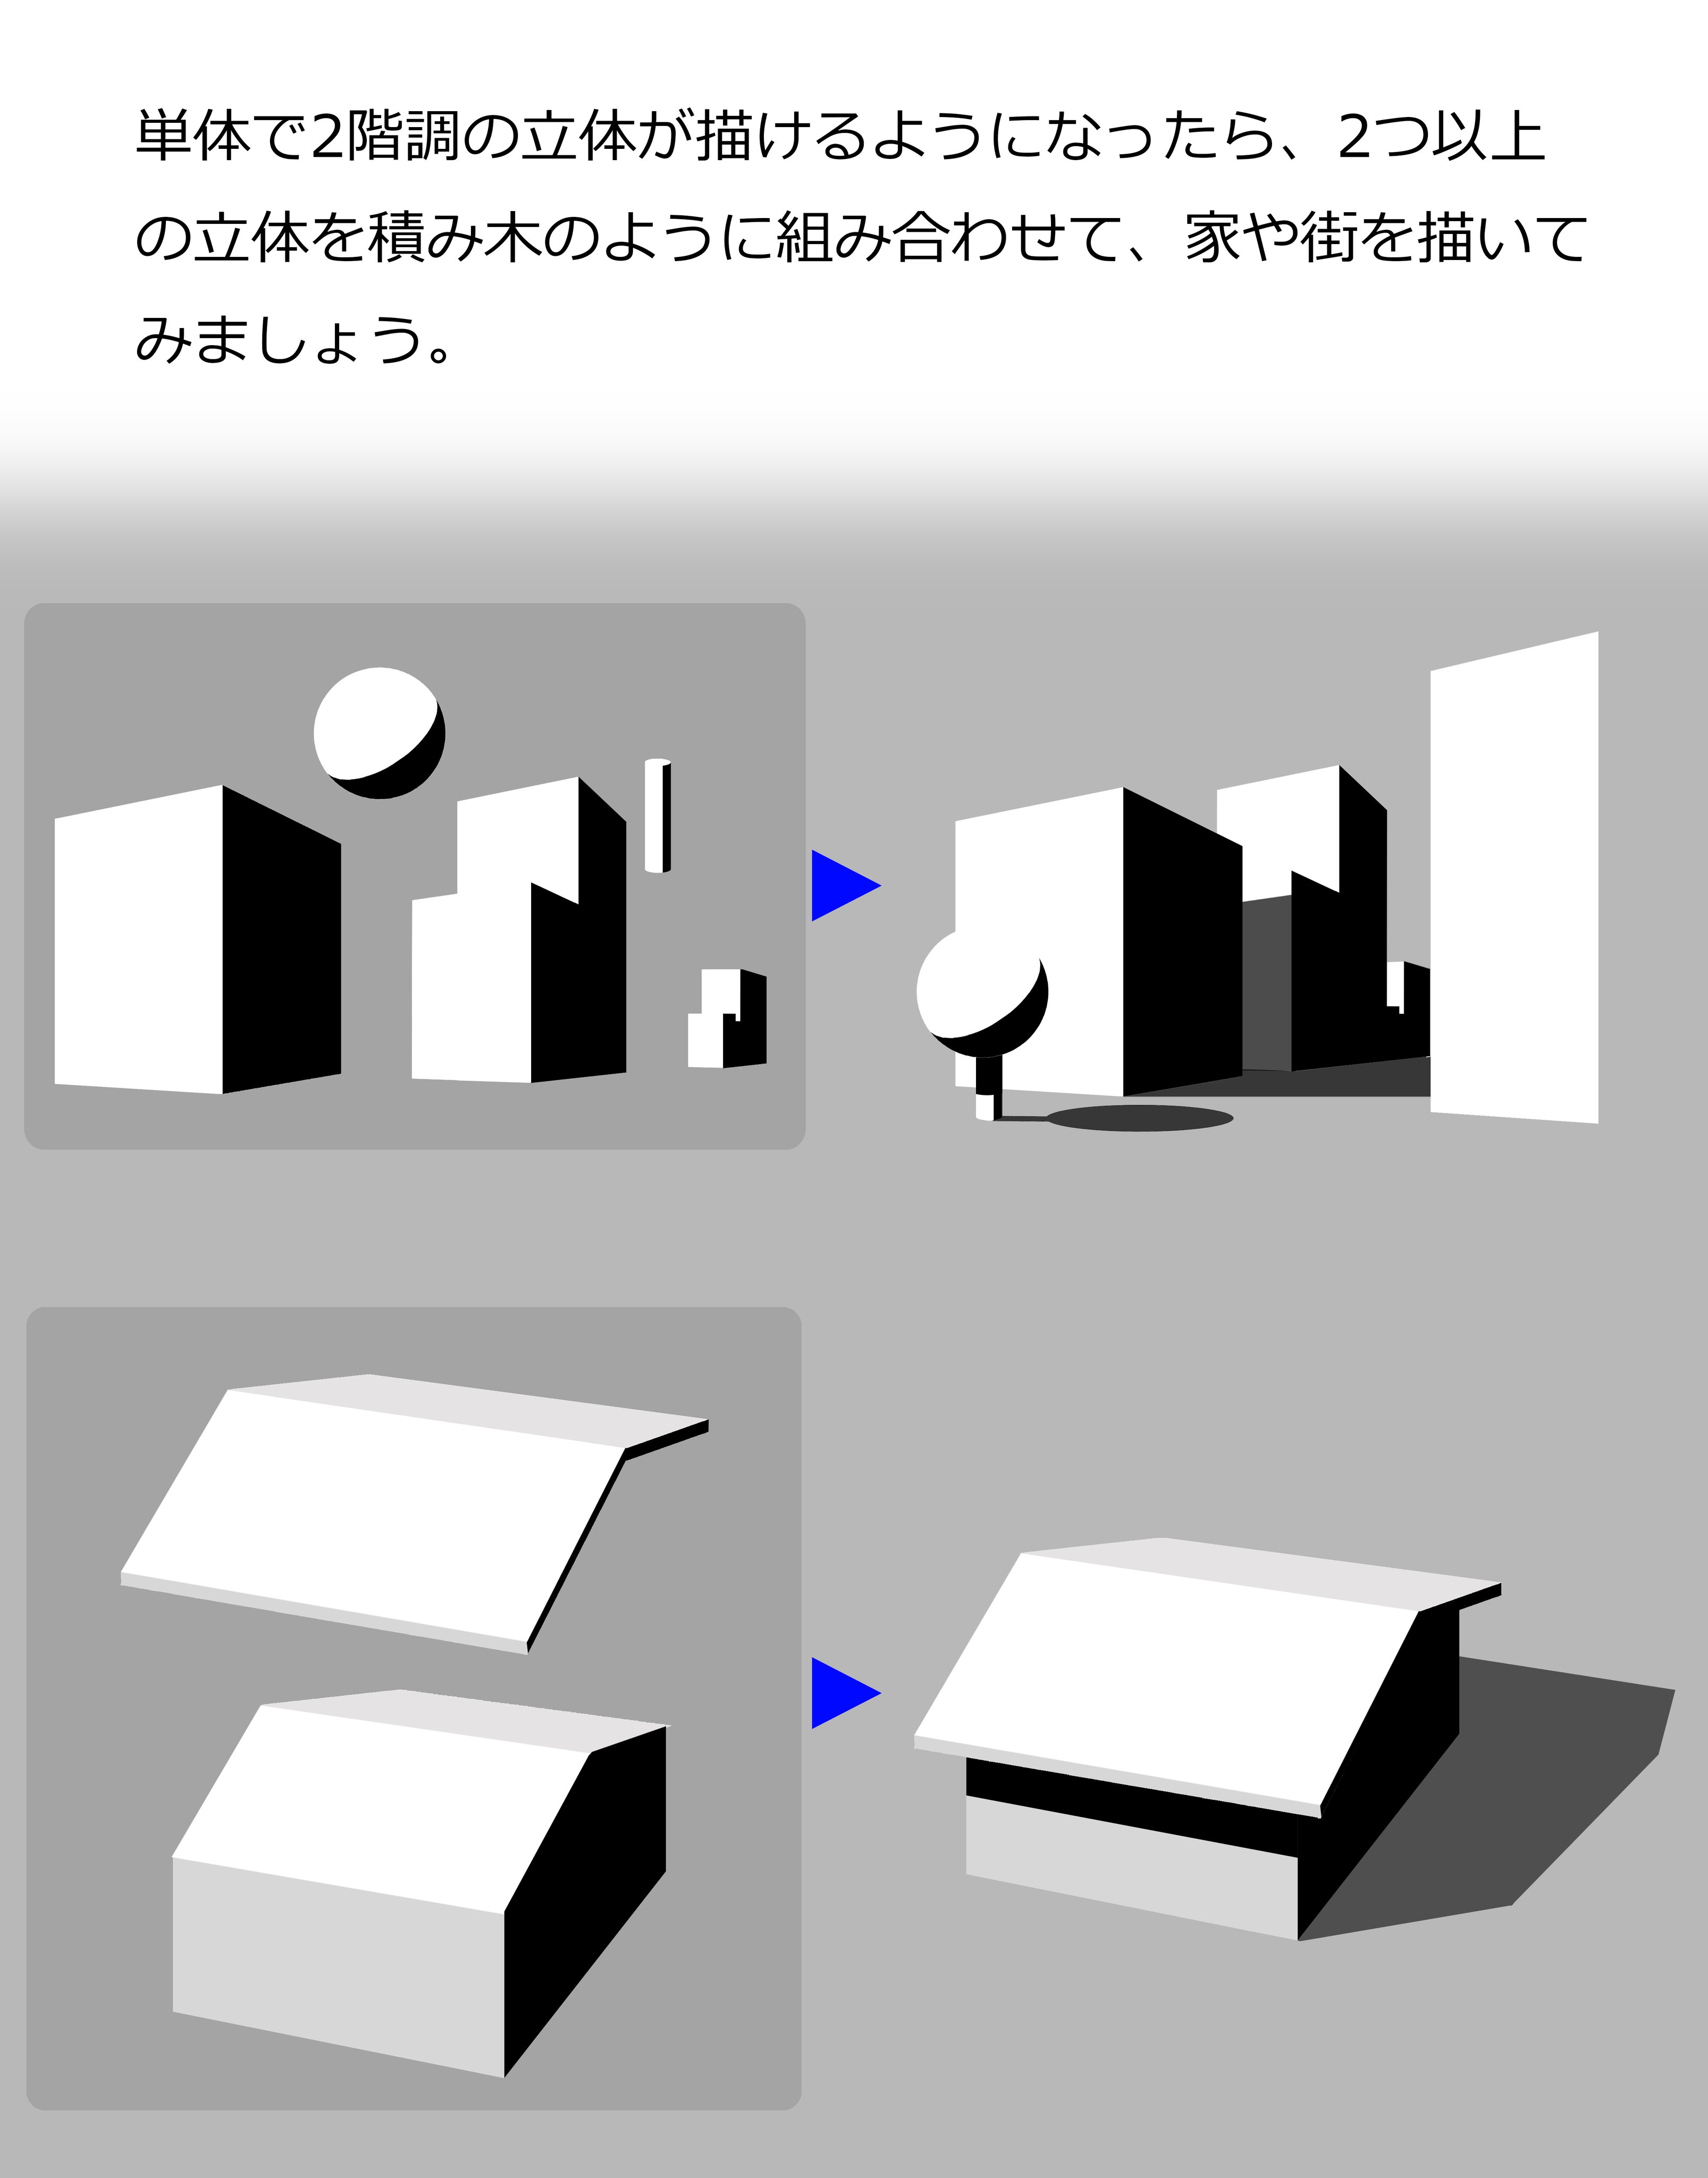 増山修 インスパイアード Masuyama Osamu Inspired Inc 在 Twitter 上 立体の組み合わせによる練習法 立方体 直方体 球 円柱 円錐を組み合わせて練習してみましょう 陰影だけでなく画面構成の練習にもなります 落ち影は物体の影と同じ黒でも構いませんが